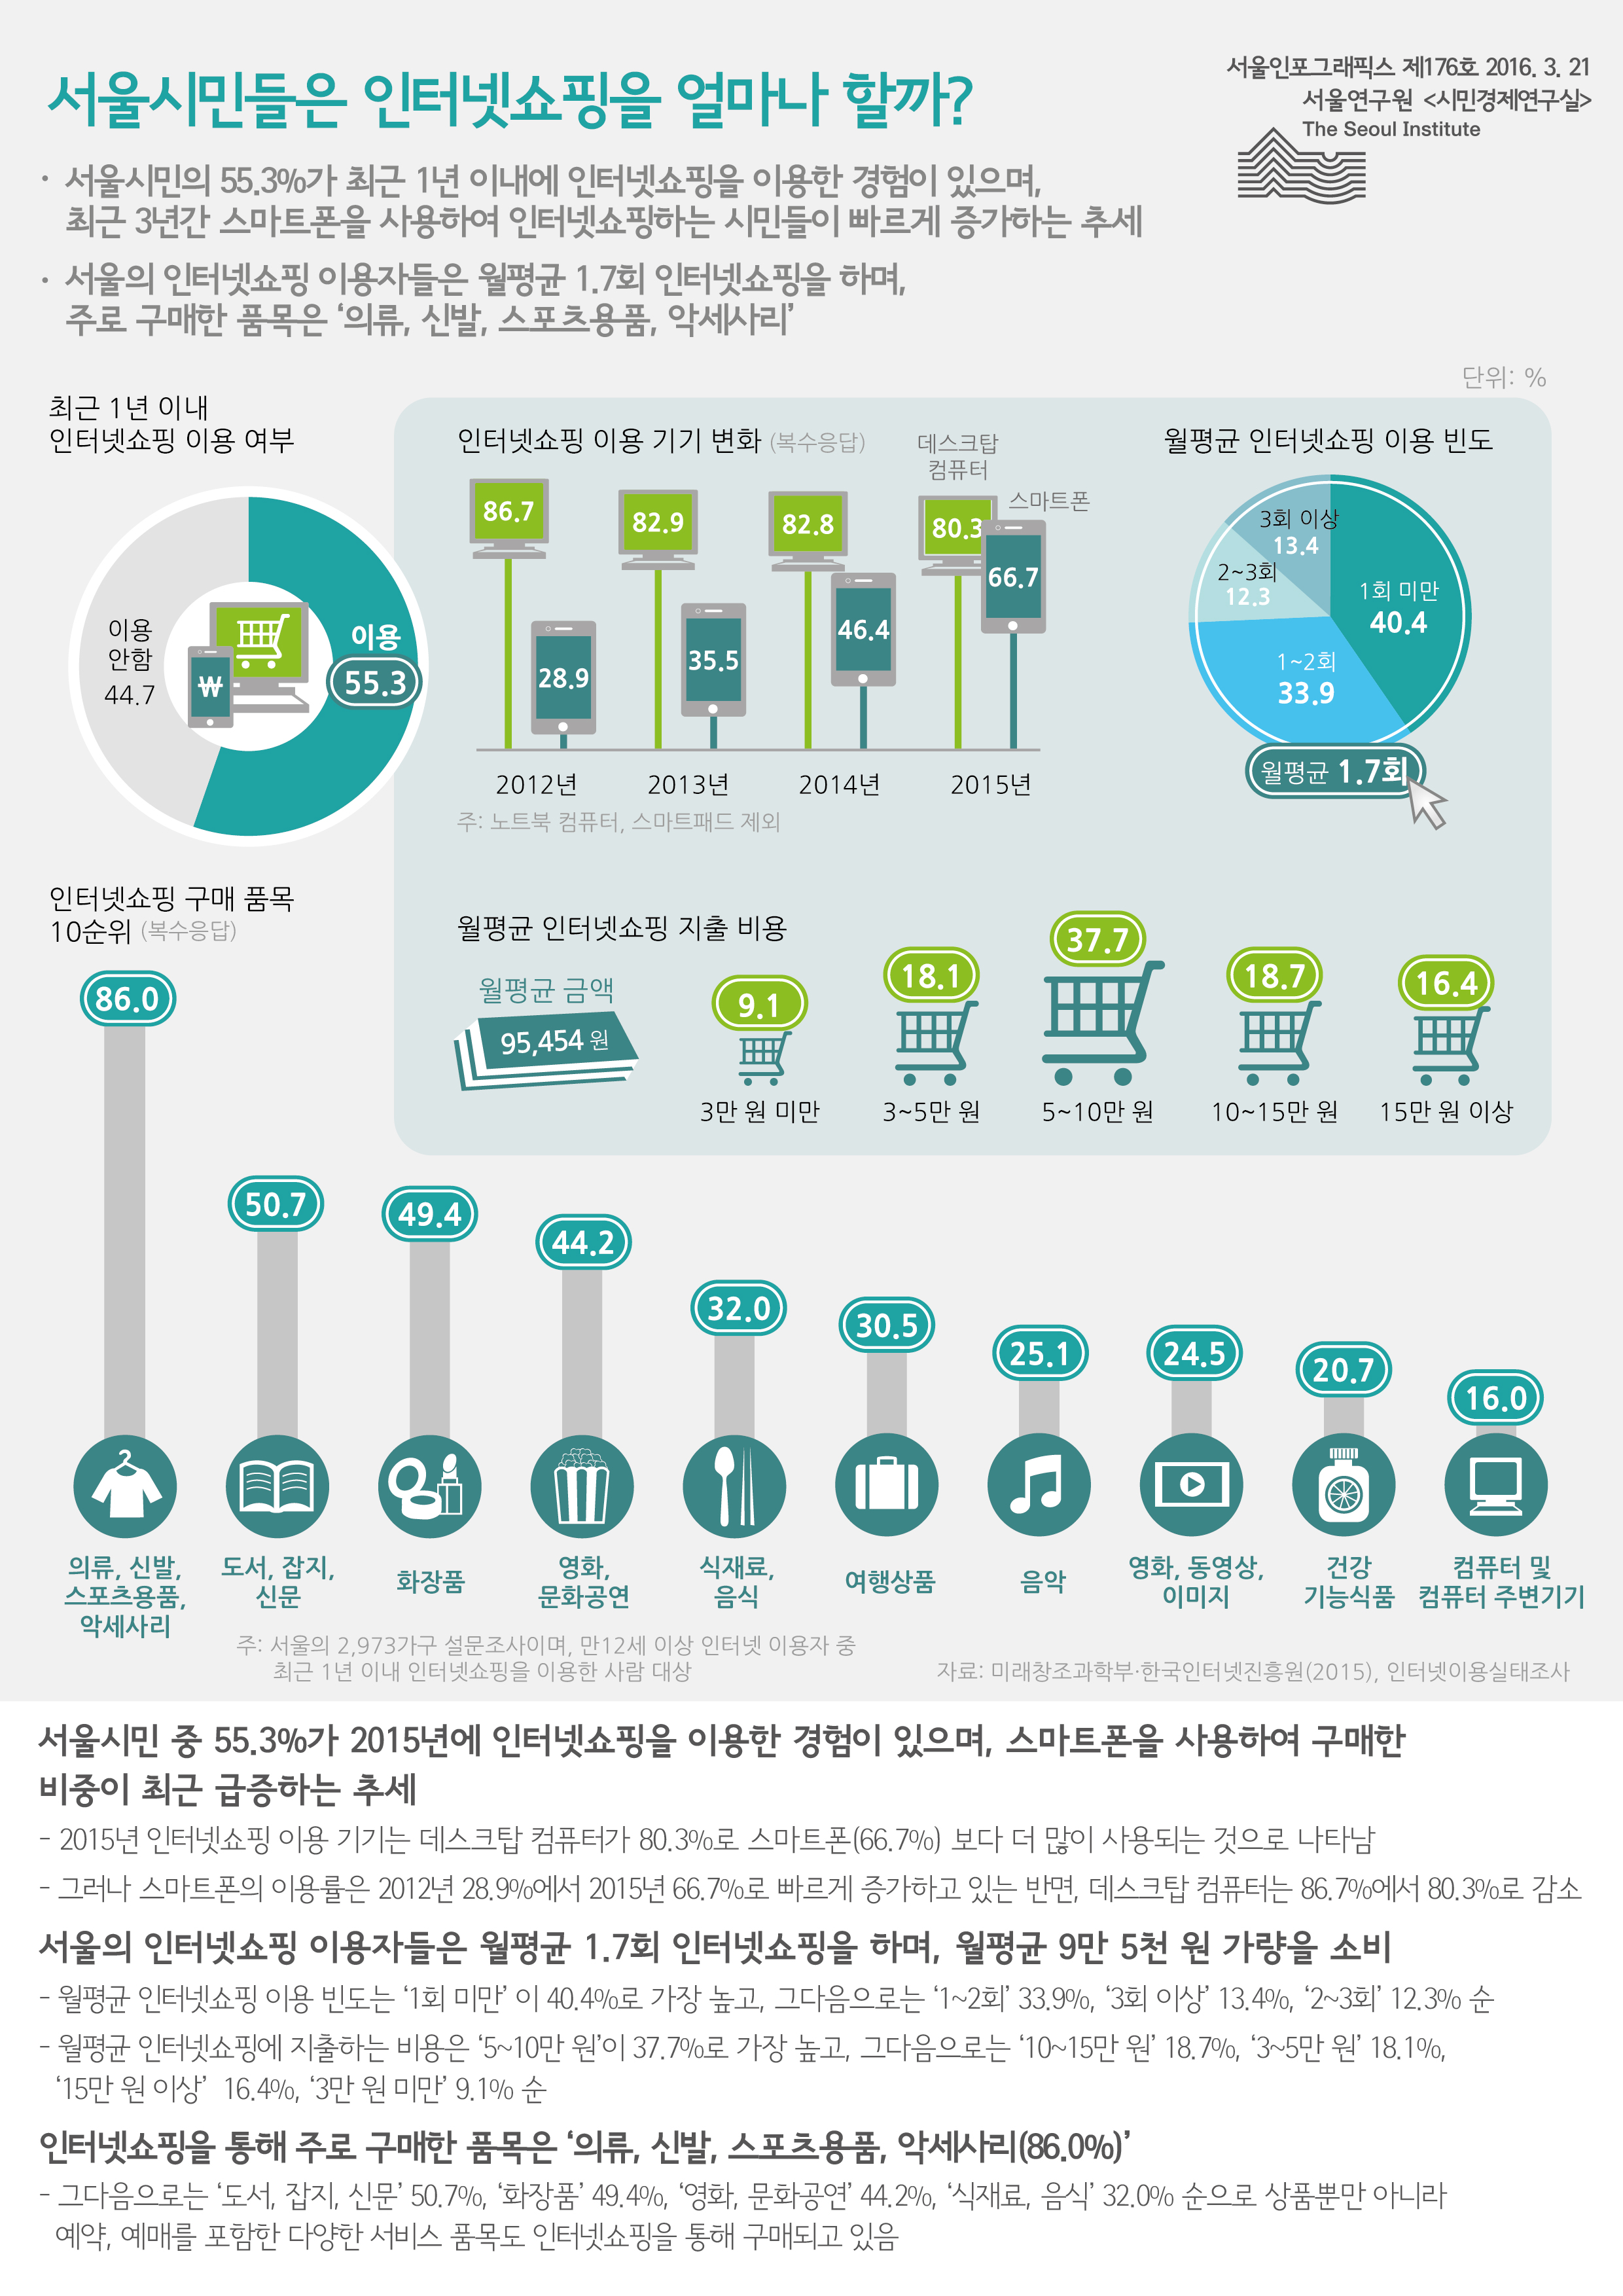 서울시민들은 인터넷쇼핑을 얼마나 할까? 서울인포그래픽스 제176호 2016년 3월 21일 서울시민의 55.3%가 최근 1년 이내에 인터넷쇼핑을 이용한 경험이 있으며, 최근 3년간 스마트폰을 사용하여 인터넷쇼핑하는 시민들이 빠르게 증가하는 추세. 서울의 인터넷쇼핑 이용자들은 월평균 1.7회 인터넷쇼핑을 하며, 주로 구매한 품목은 ‘의류, 신발, 스포츠용품, 악세사리’나타남으로 정리될 수 있습니다. 인포그래픽으로 제공되는 그래픽은 하단에 표로 자세히 제공됩니다.